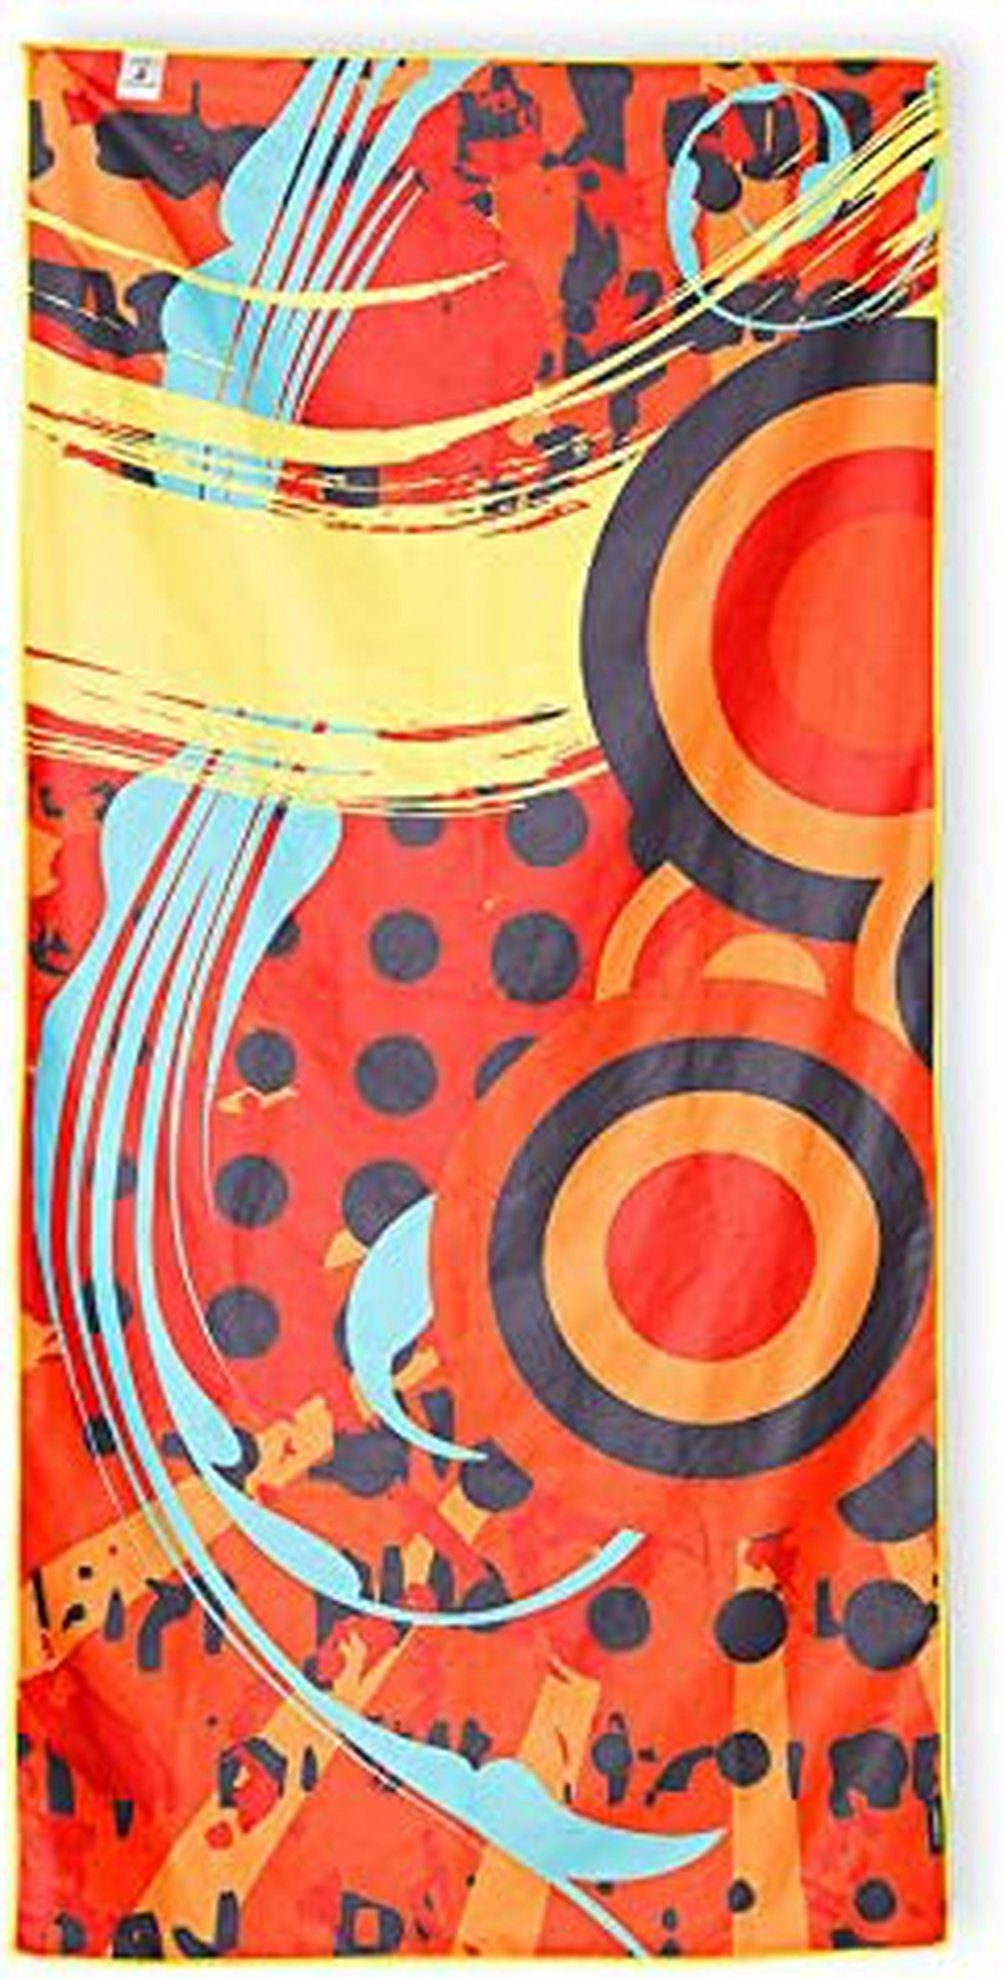 4Monster Sporthandtuch Wassersport Handtuch 100% Mikrofaser Suede Towel, Mikrofaser, saugfähig, schnell trocknend, Größe 160 x 80cm, mehrfarbiges Design orange